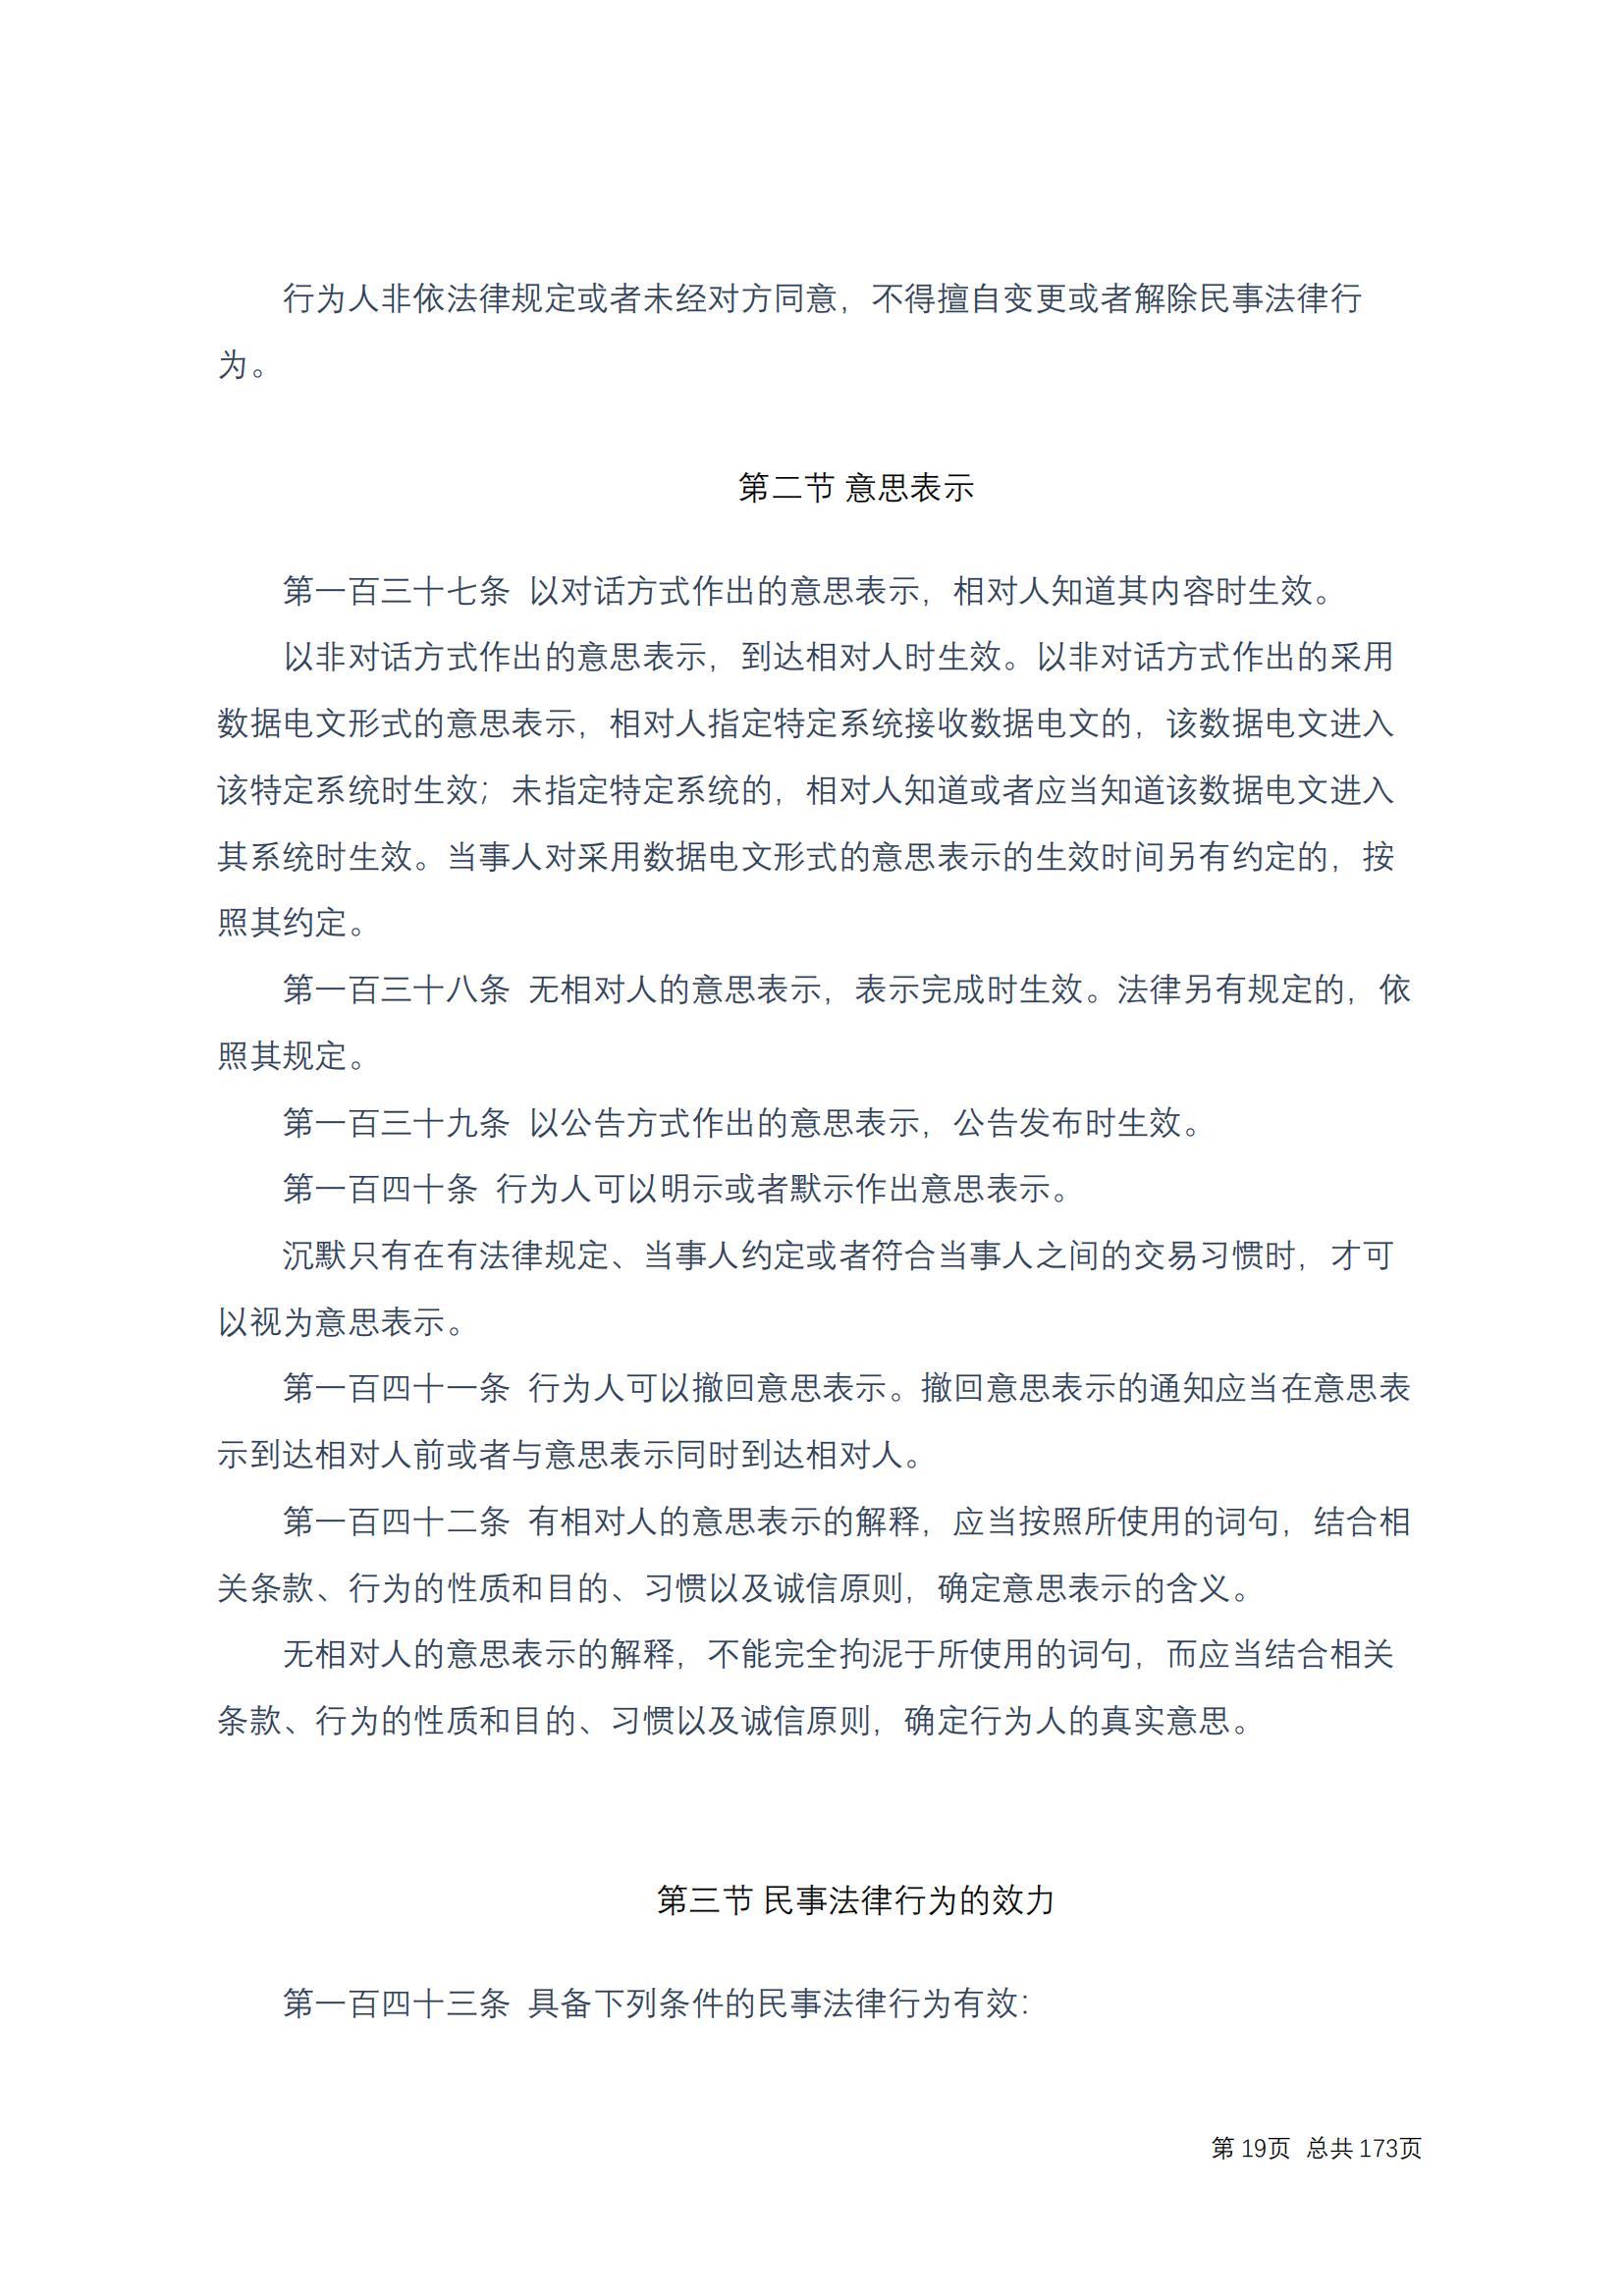 中华人民共和国民法典 修改过_18